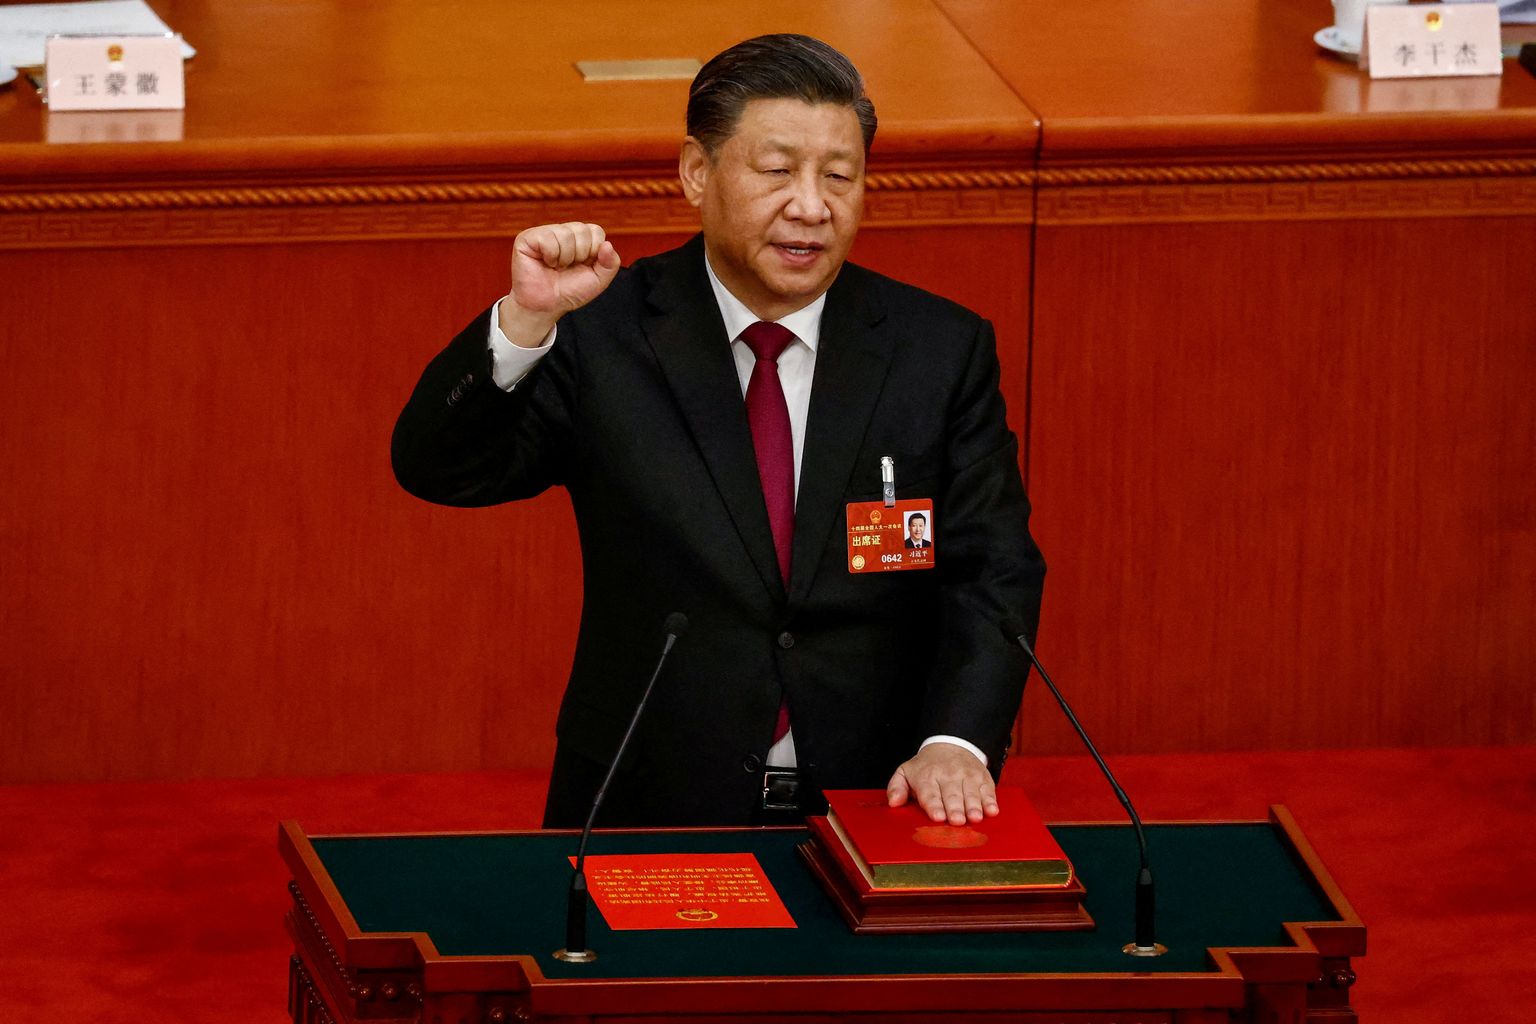 Hiina president Xi Jinping annab täna ametivannet parlamendis, mis kinnitas ta kolmandaks ametiajaks riigipeaks.